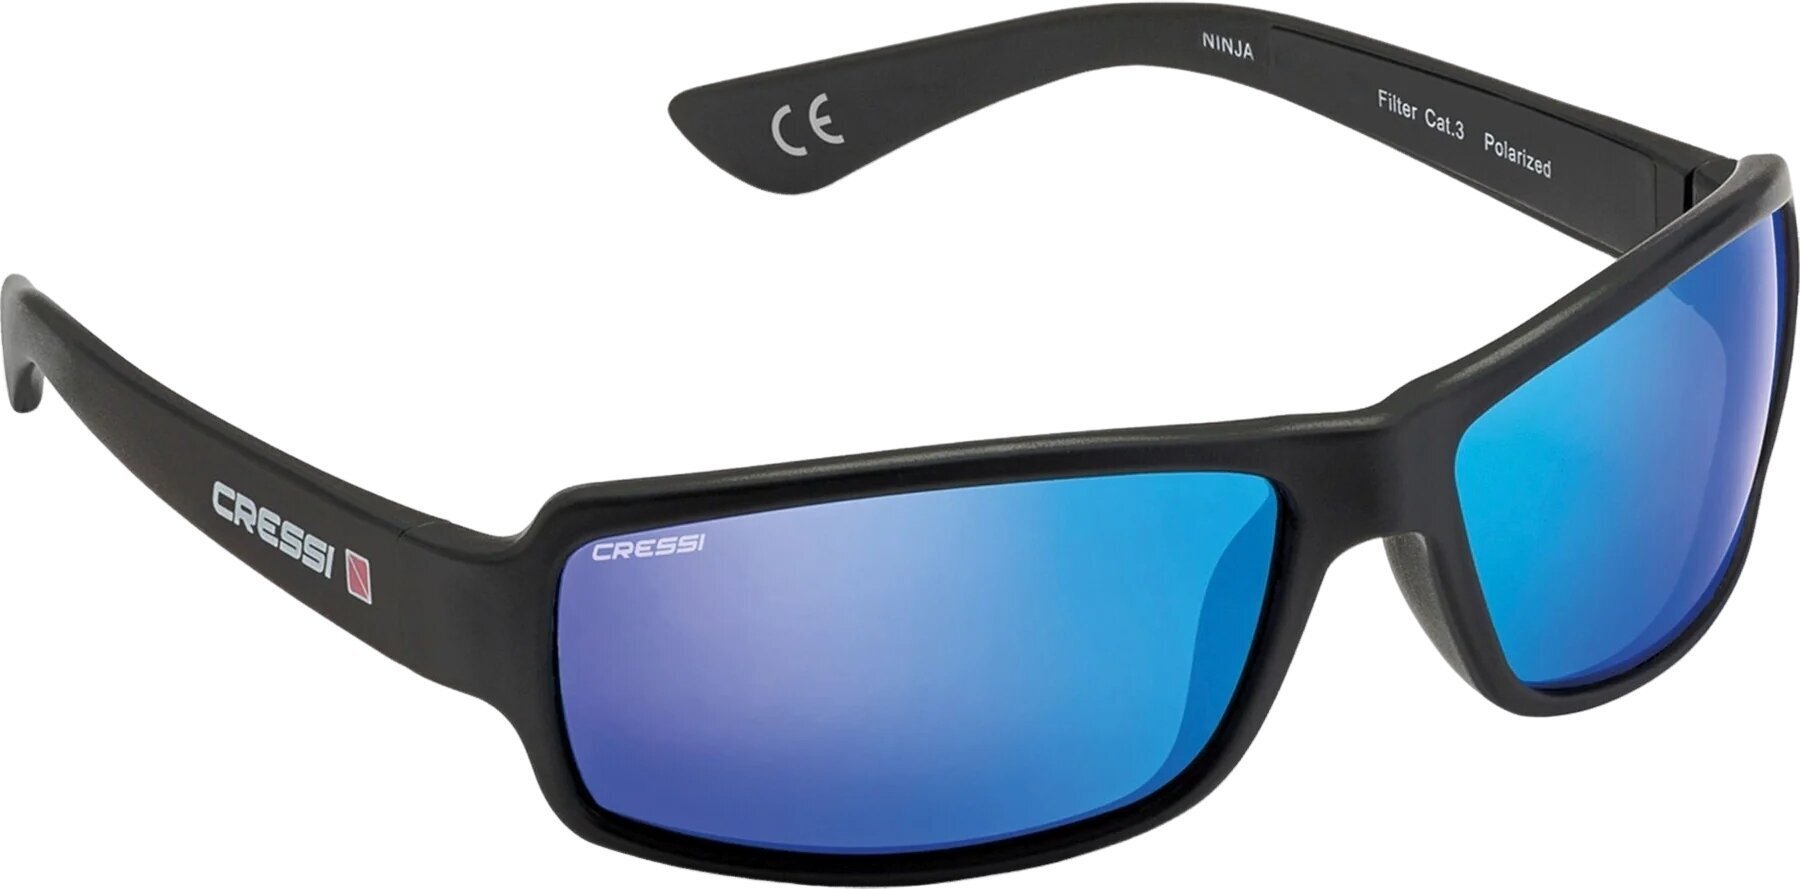 Sonnenbrille fürs Segeln Cressi Ninja Black/Blue/Mirrored Sonnenbrille fürs Segeln